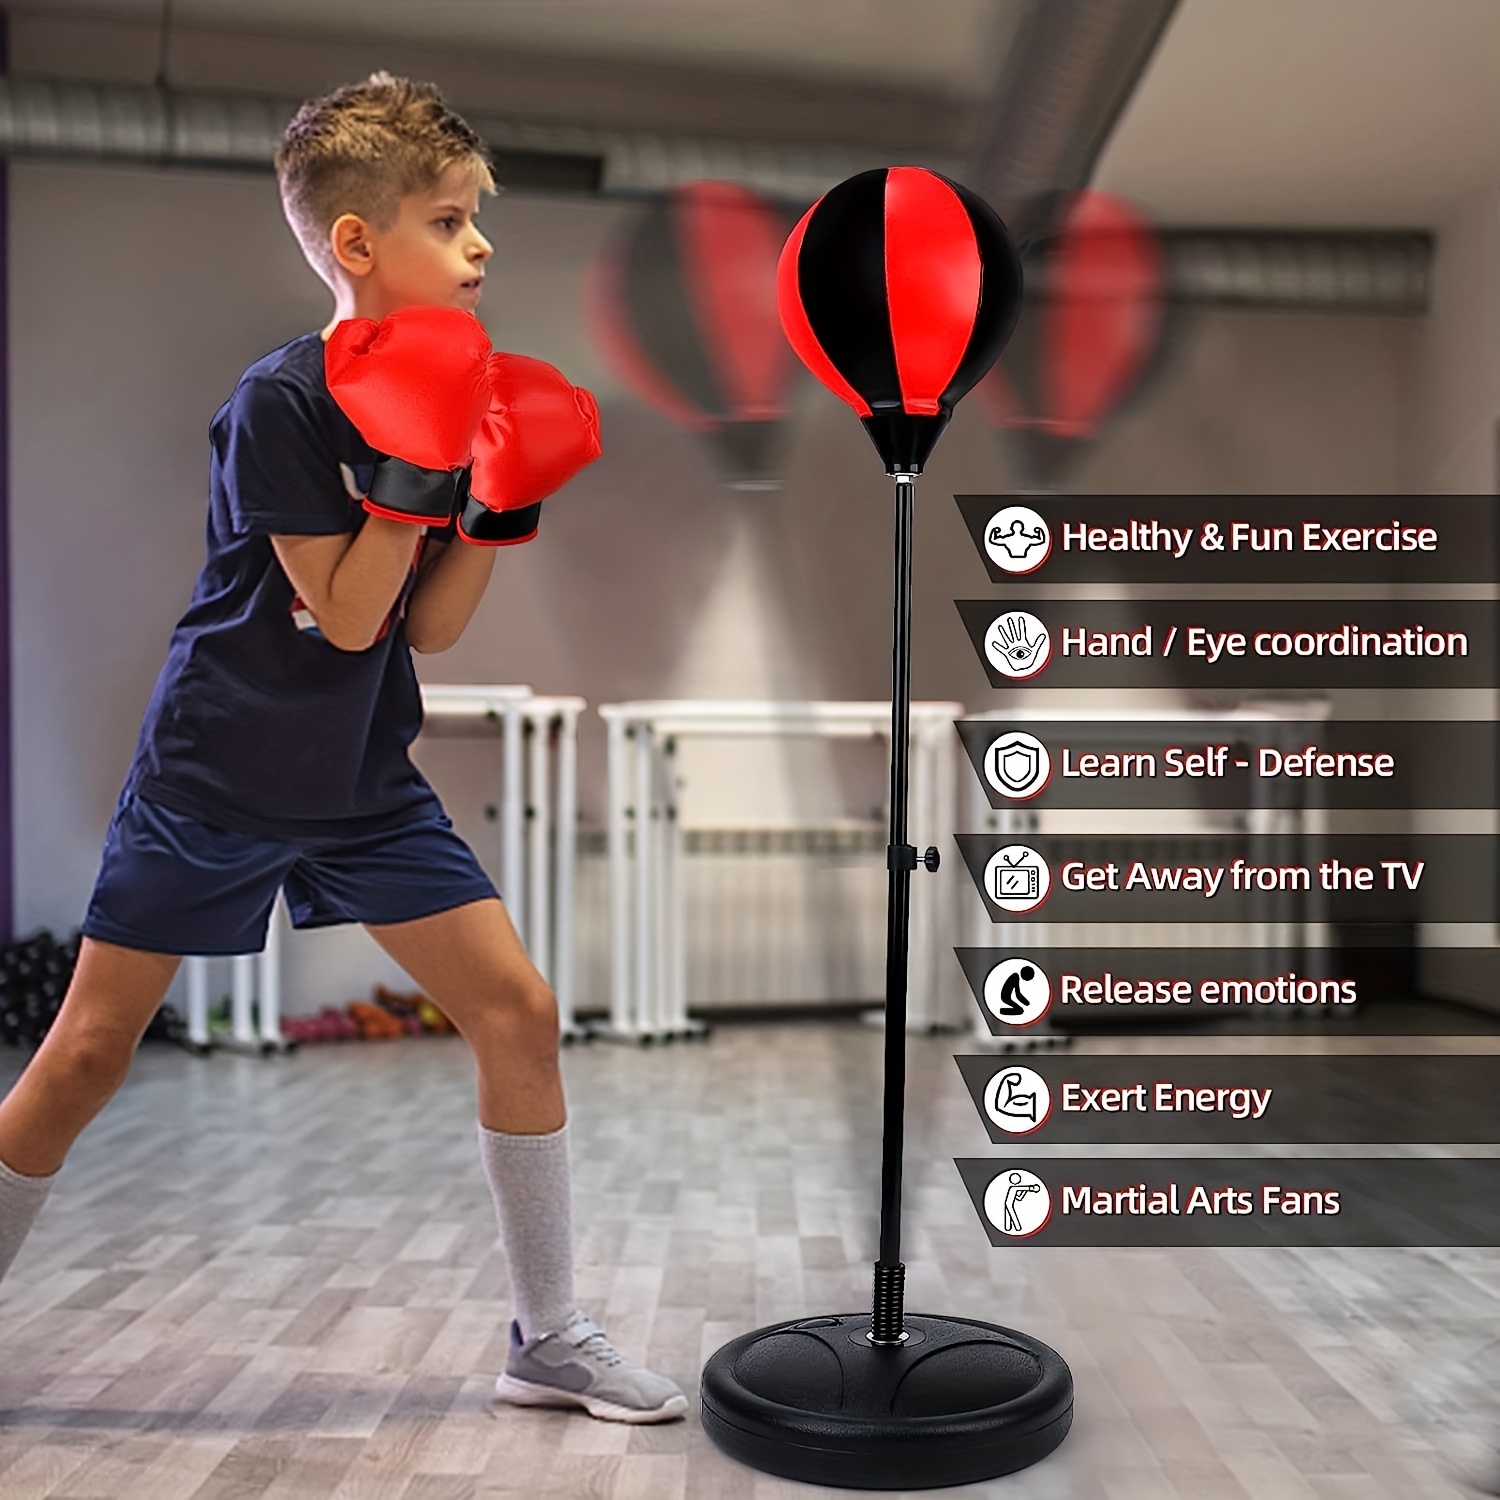 Saco de boxeo para niños - Bola de boxeo ajustable con soporte Guantes de  entrenamiento de boxeo y bomba de mano Saco de boxeo ajustable para niños